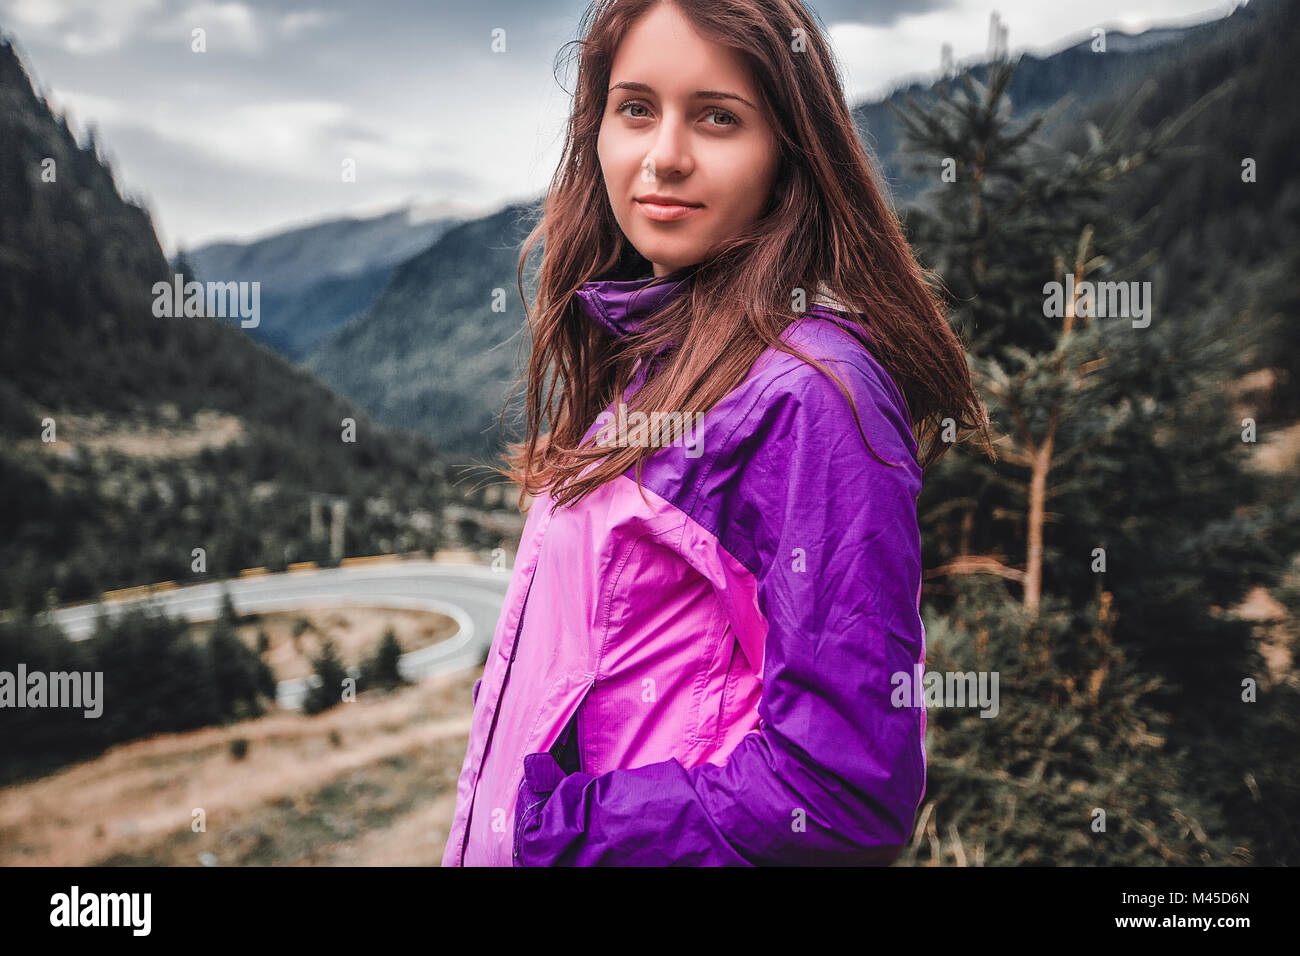 Ritratto di giovane donna montagna vicina autostrada, Draja, Vaslui, Romania Foto Stock